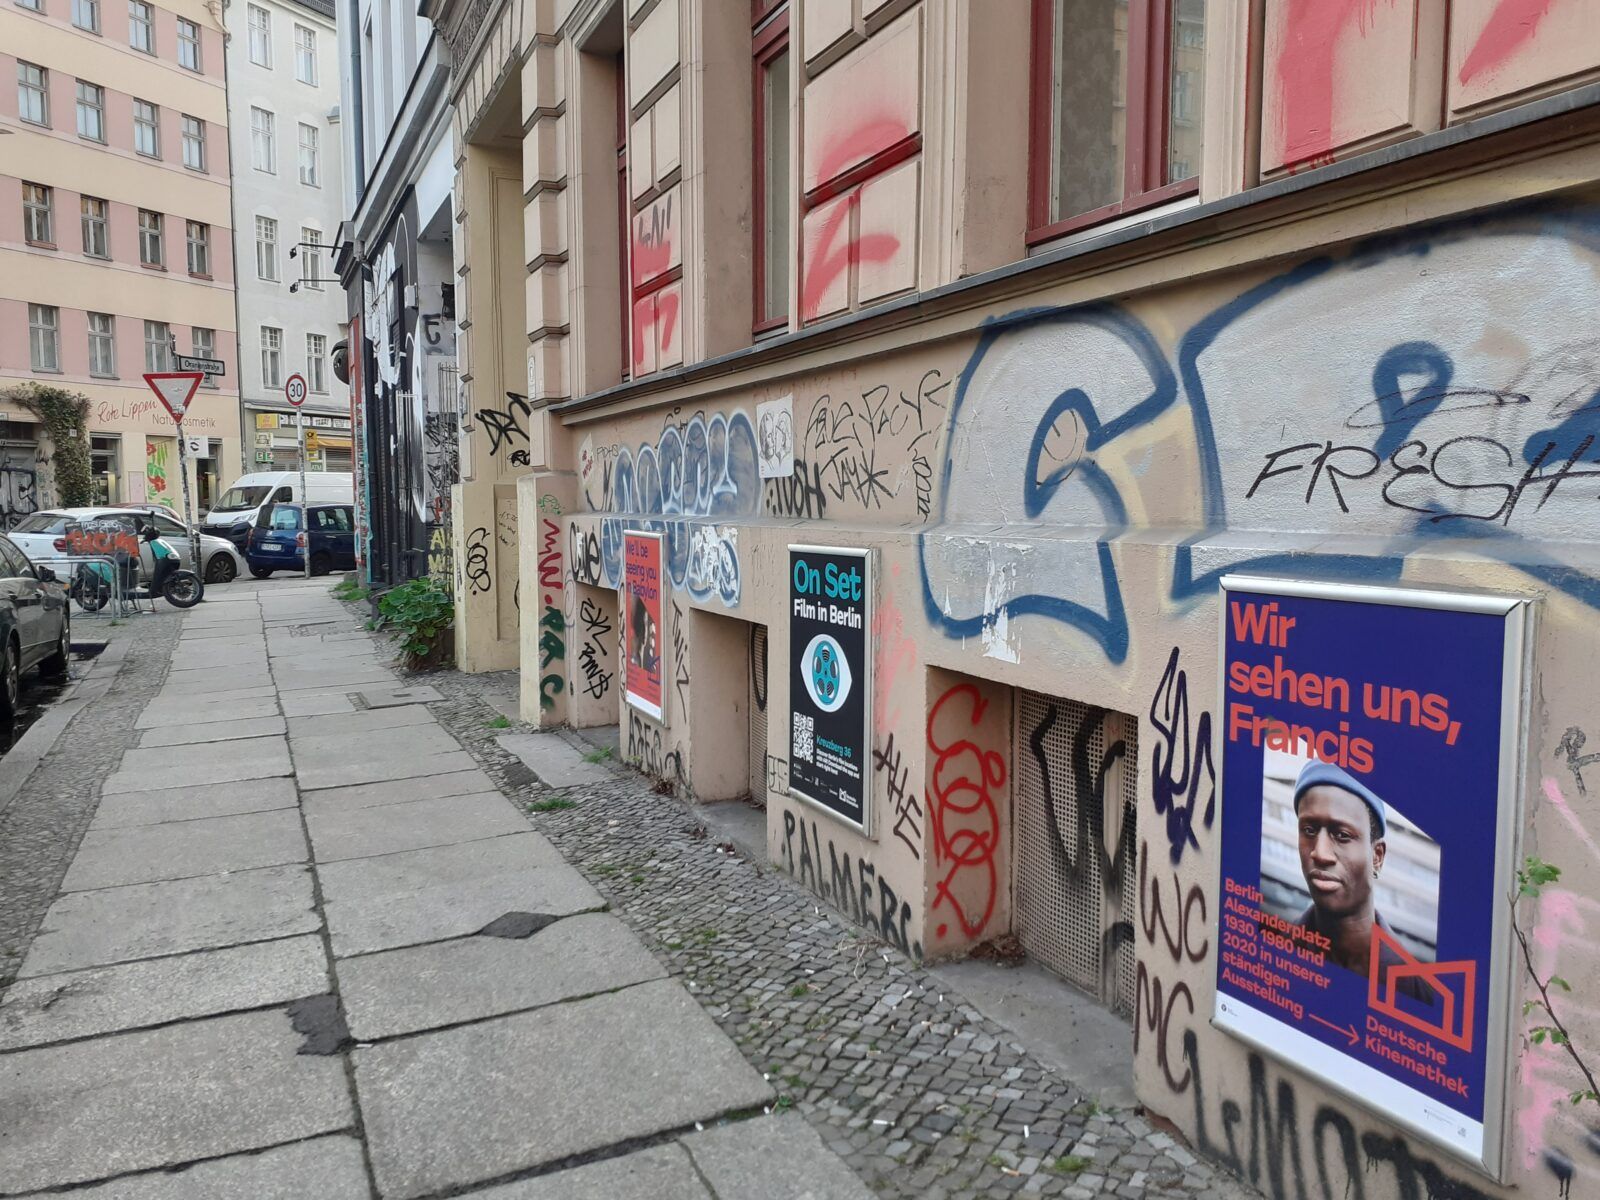 Das Foto zeigt mehrere Werbeplakate an einer Hauswand in Berlin-Kreuzberg. Eins davon ist ein Werbeplakat für die App "On Set". Es dient als Marker zum Auslösen der AR-Elemente in der App.